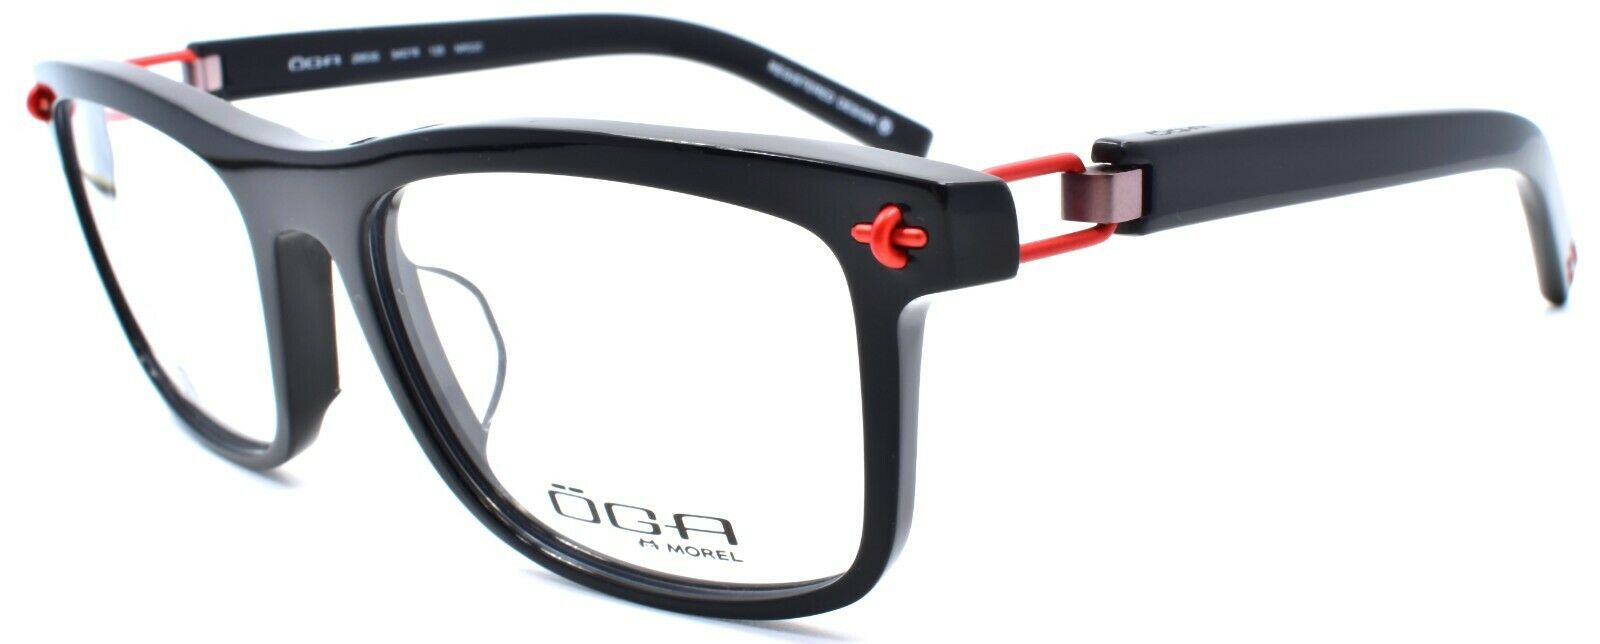 1-OGA by Morel 2953S NR020 Men's Eyeglasses Frames Asian Fit 54-18-125 Black-3604770890228-IKSpecs